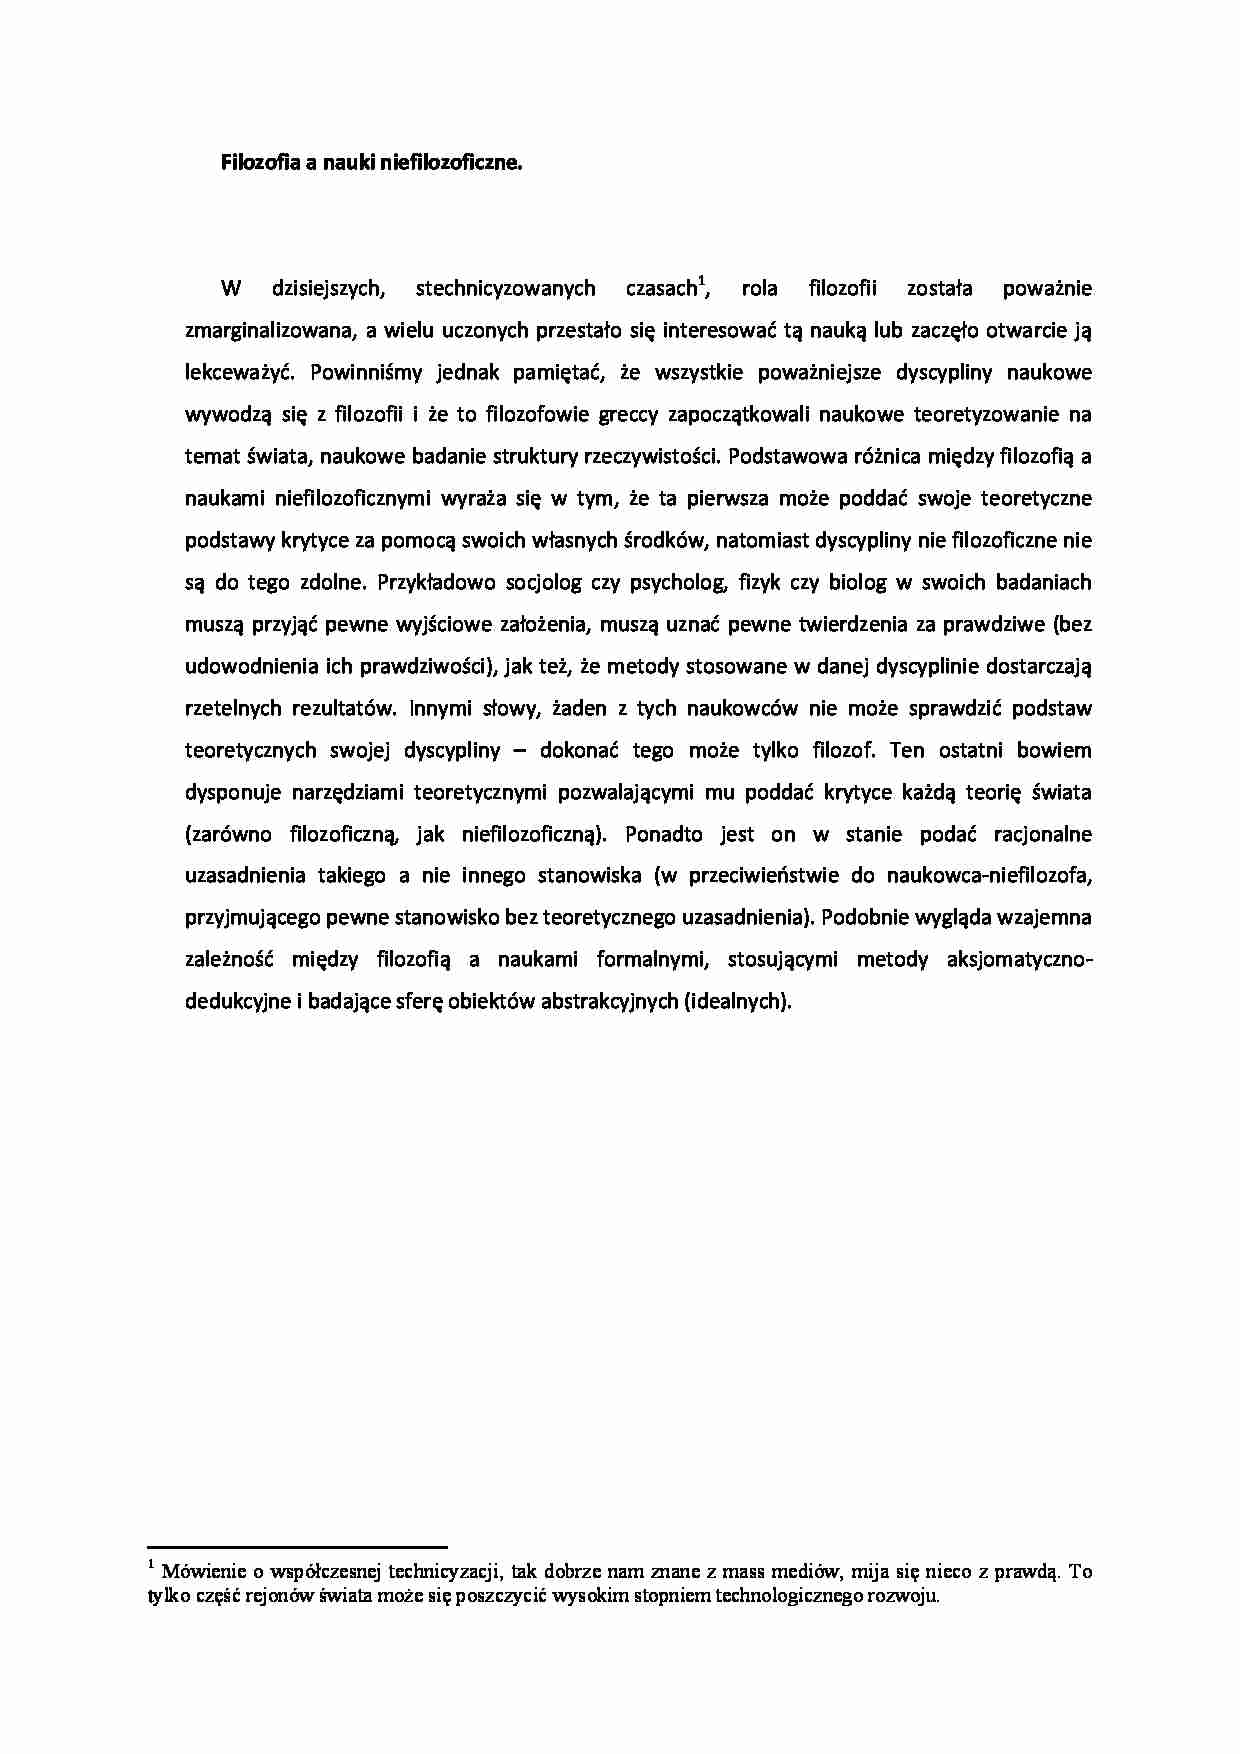 Filozofia a nauki niefilozoficzne - strona 1